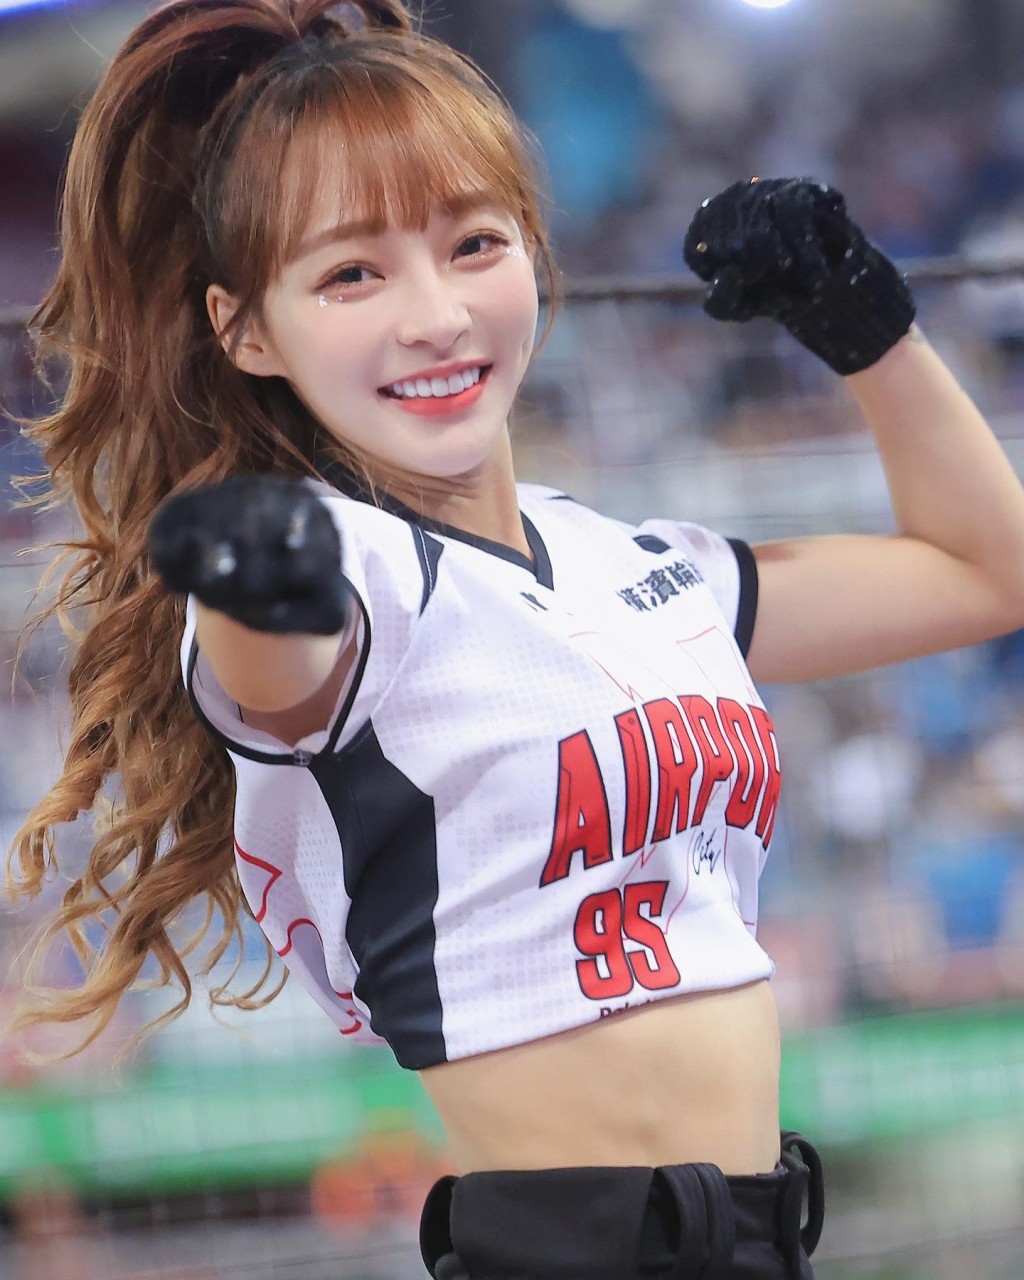 林襄是台灣職業棒球隊「樂天桃猿」的啦啦隊成員。